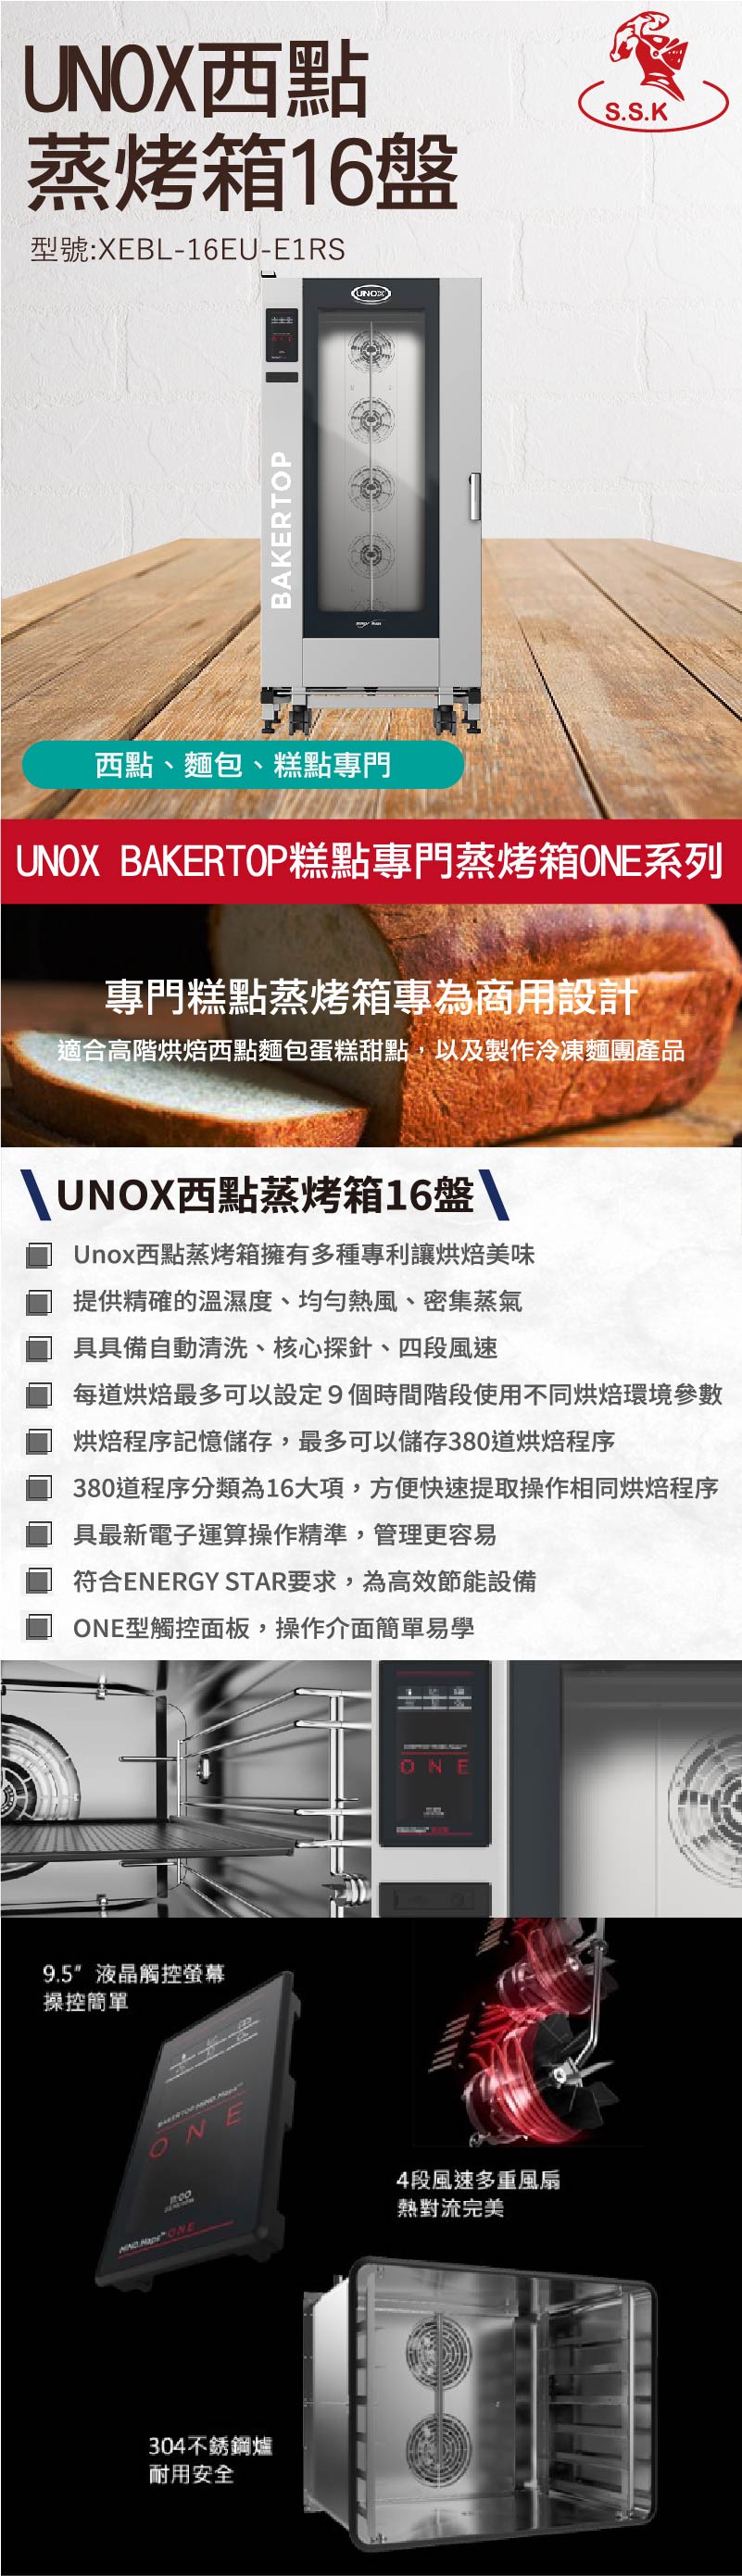 UNOX西點蒸烤箱16盤